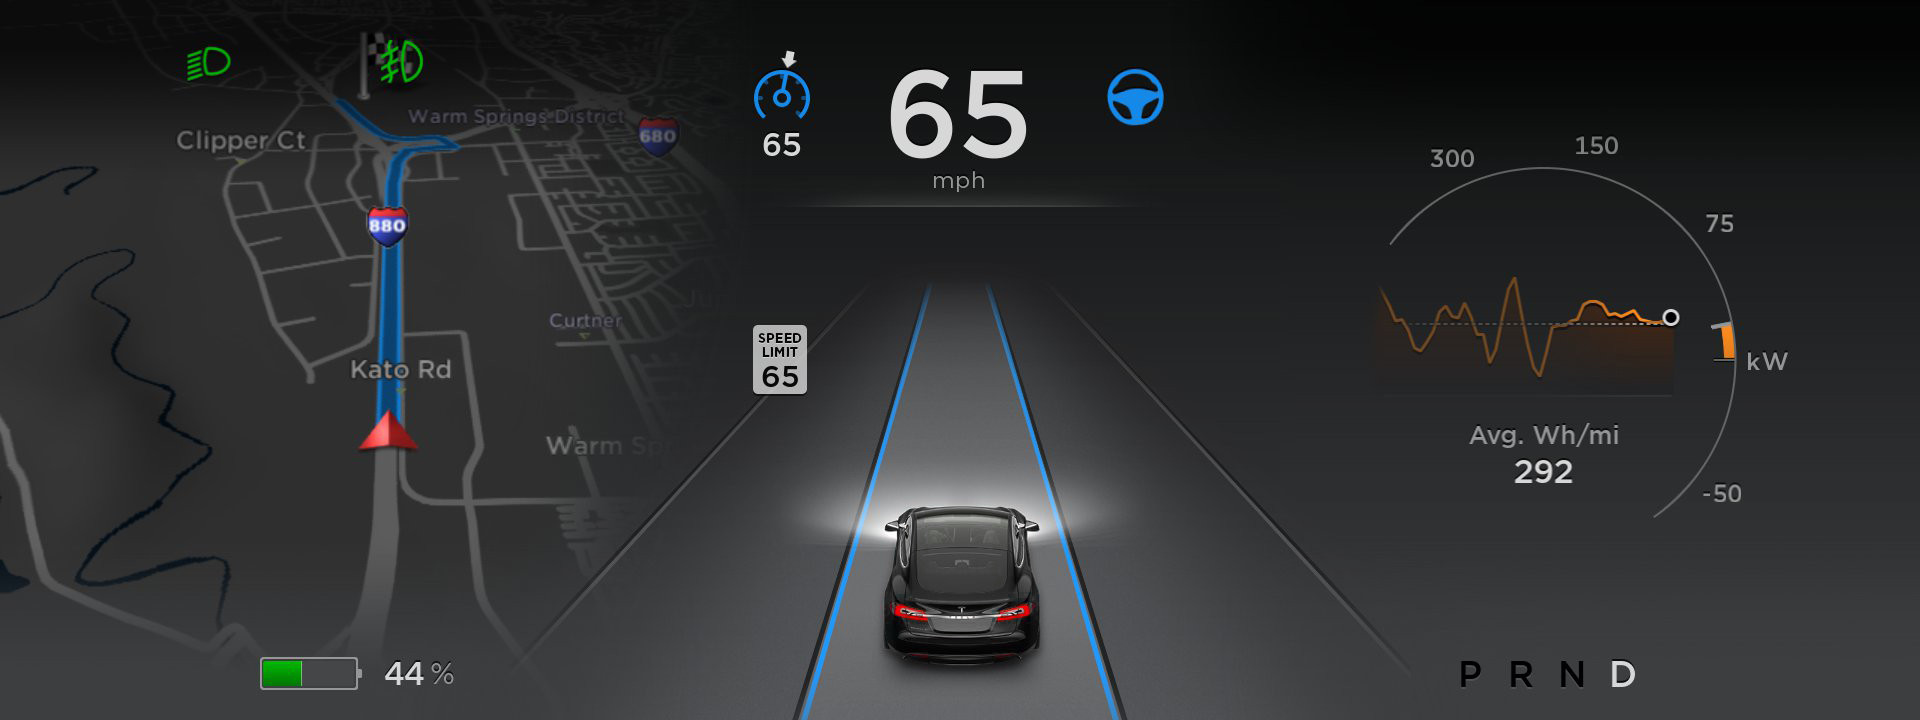 Đức yêu cầu Tesla không sử dụng chữ "Autopilot" khi nói về tính năng hỗ trợ tự lái xe